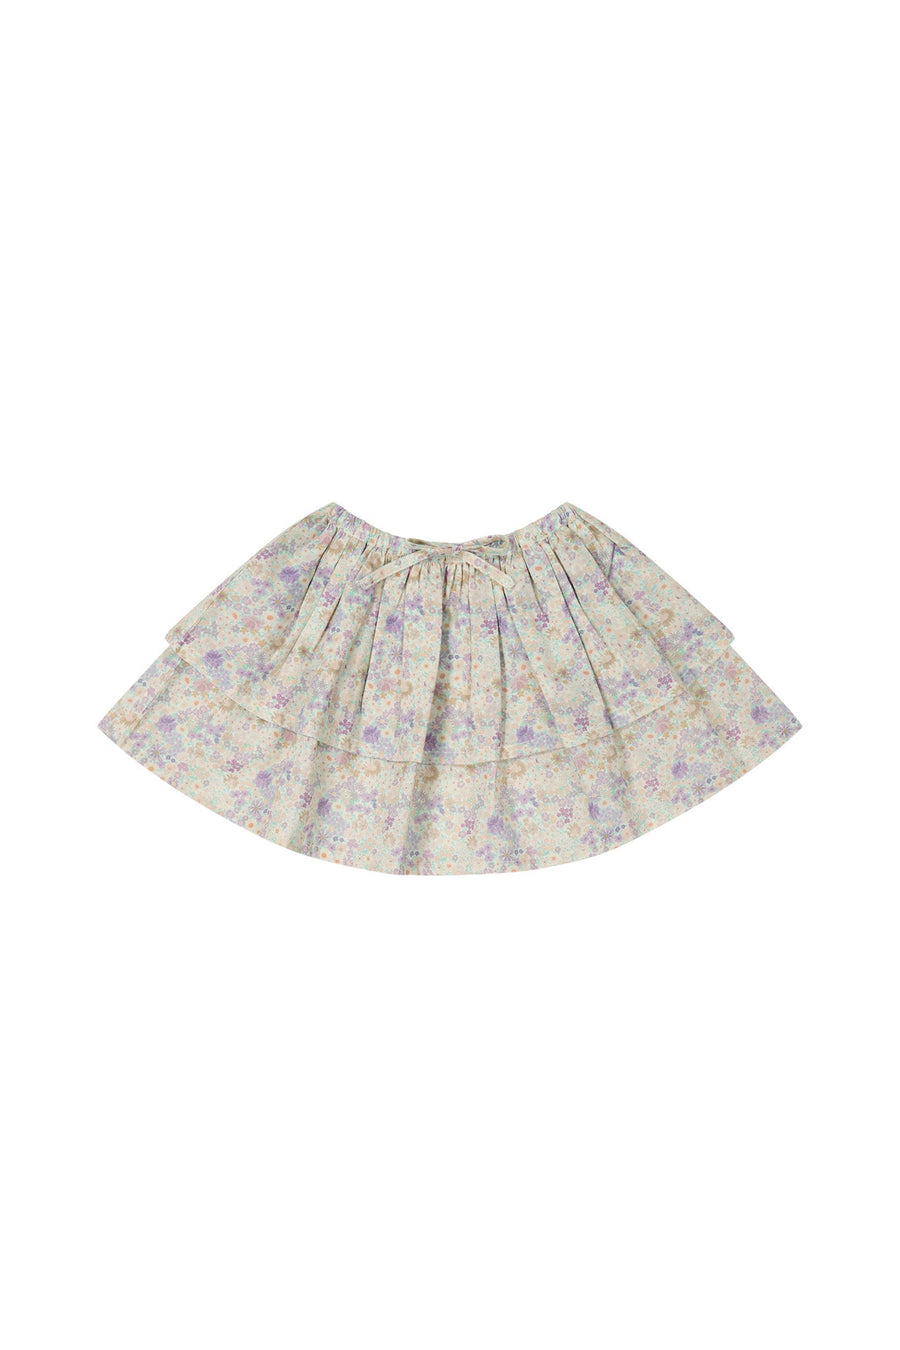 Organic Cotton Heidi Skirt - Mayflower Childrens Skirt from Jamie Kay USA